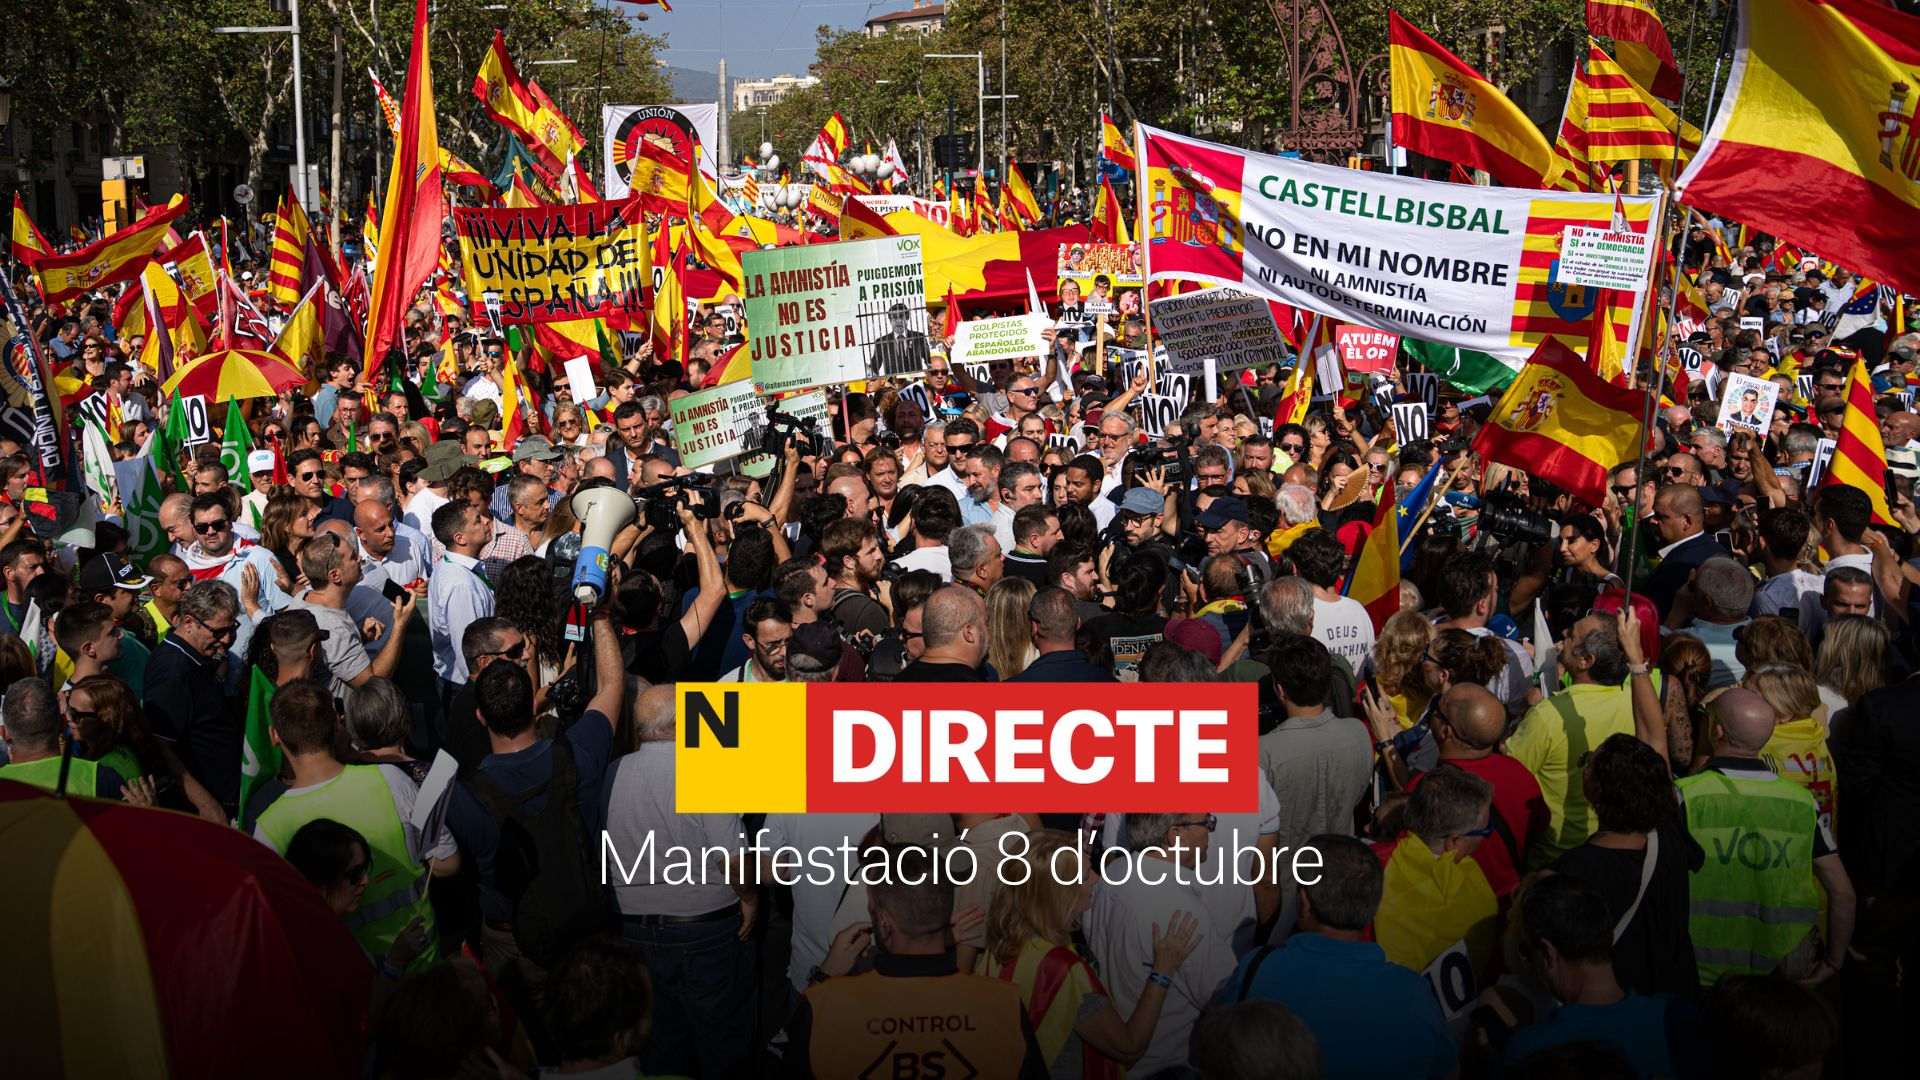 Manifestación del 8 de octubre contra la amnistía en Barcelona, hoy, DIRECTO | Última hora, discursos y reacciones